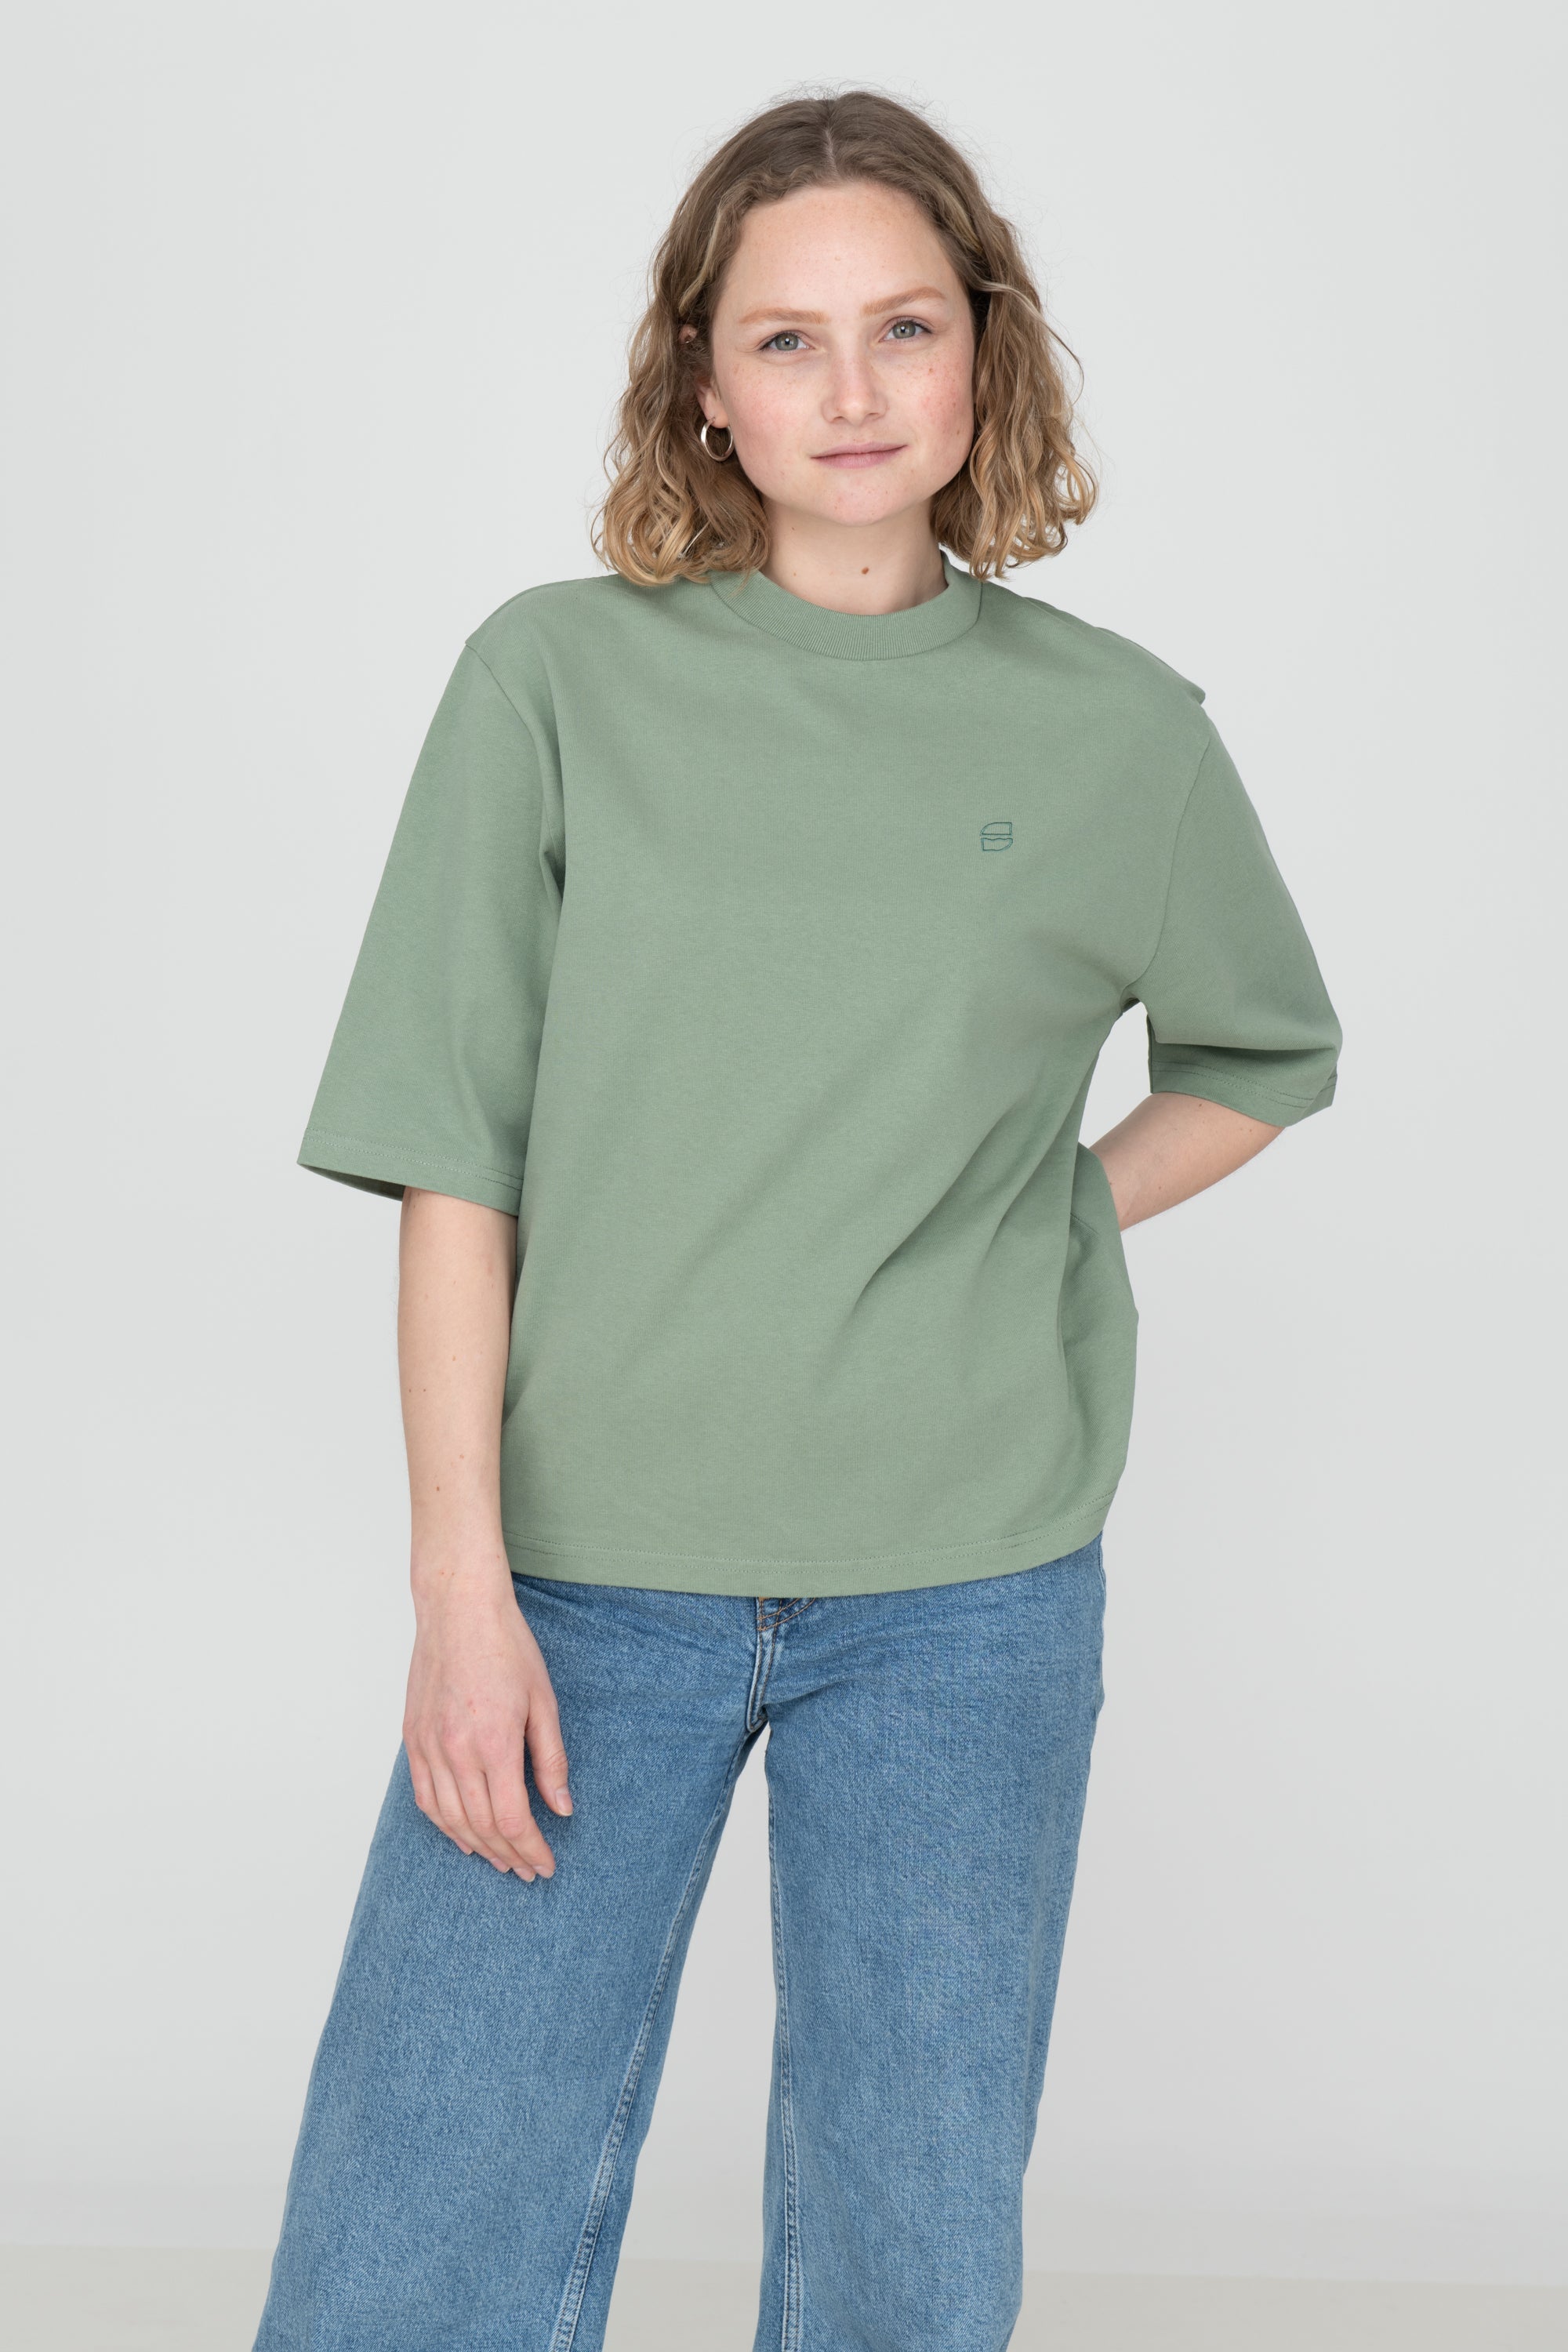 Schweres T-Shirt in Grün für Damen von SALZWASSER aus Bio-Baumwolle